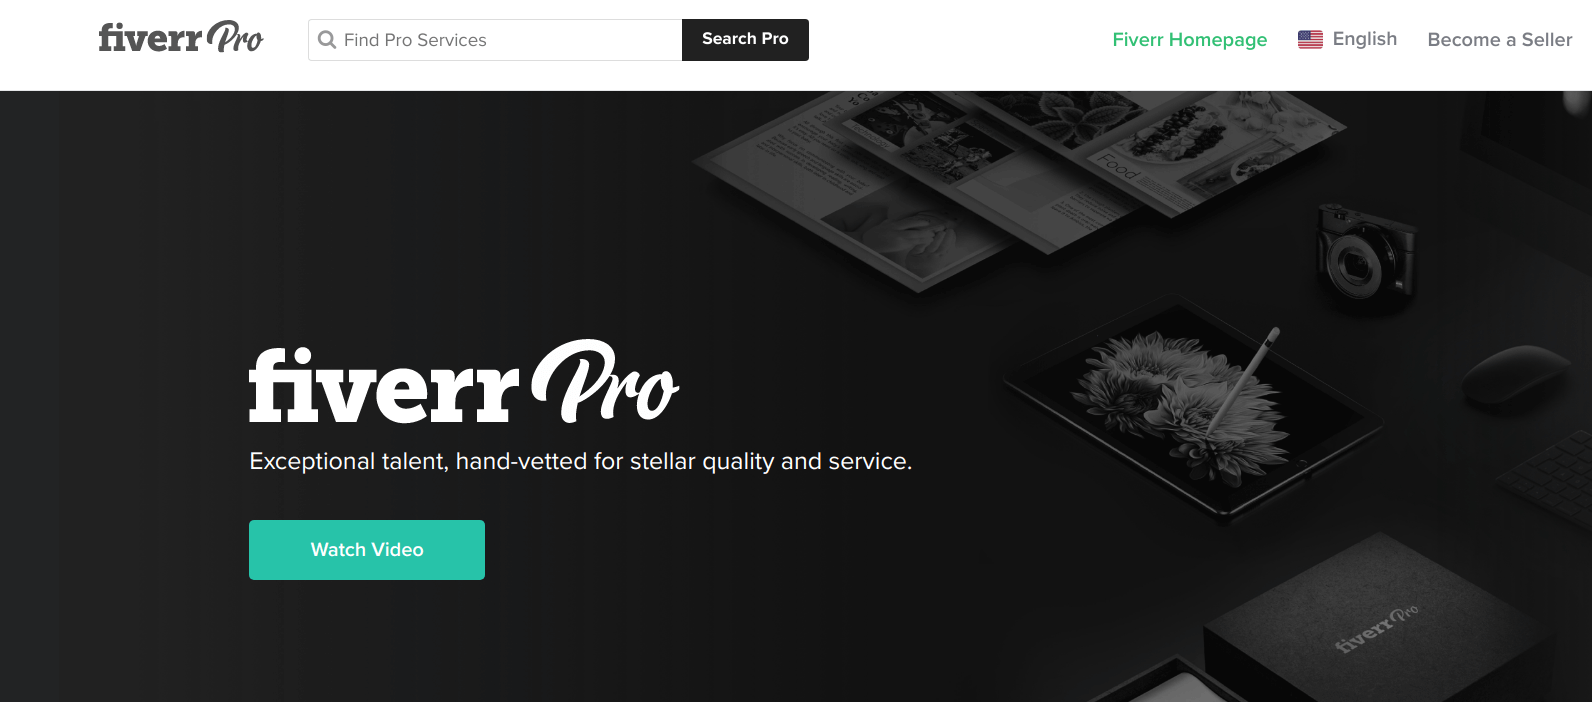 Fiverr Pro landing page